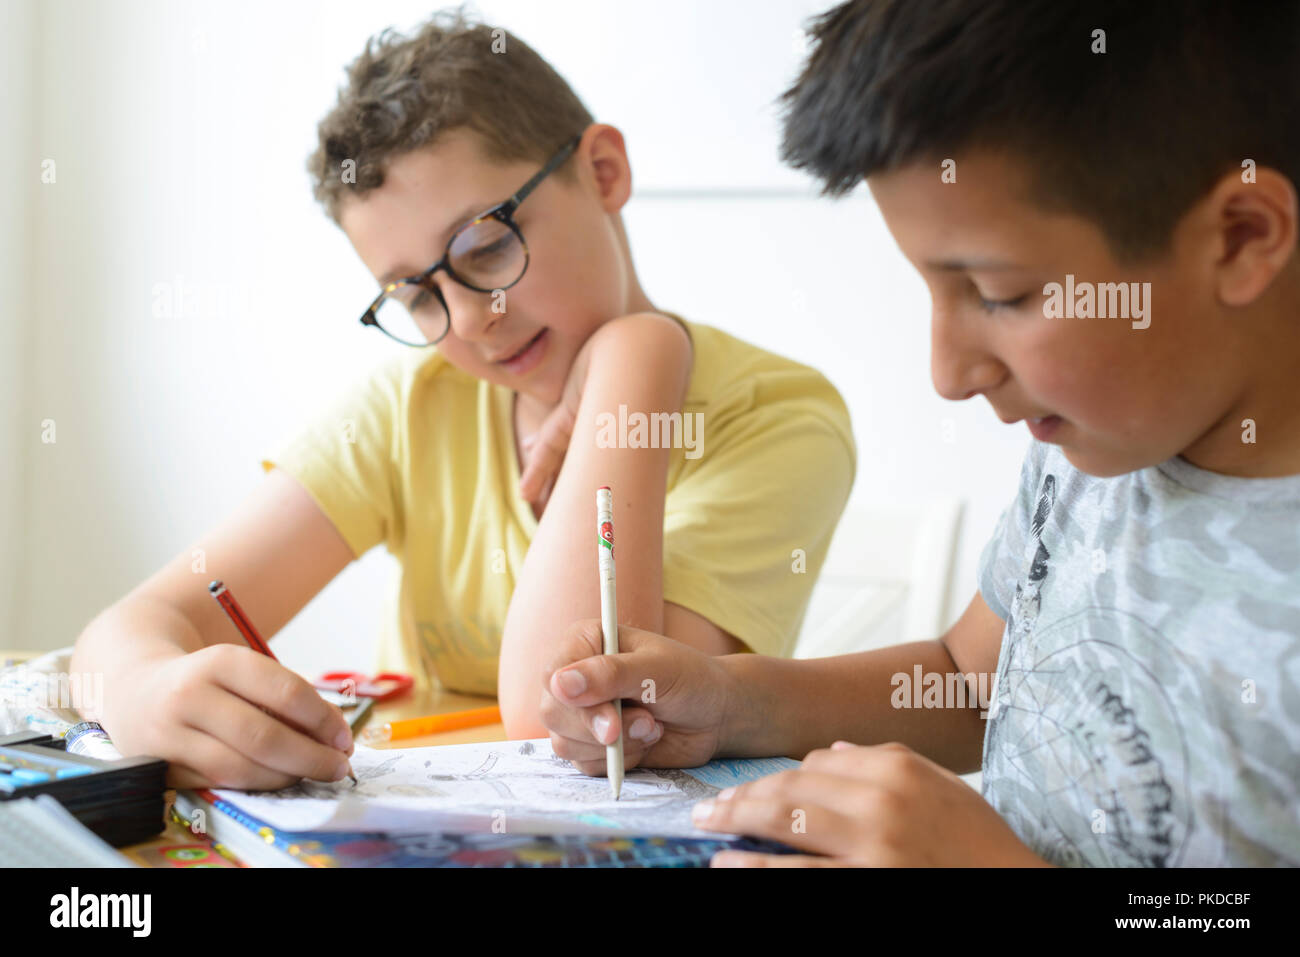 UK- Boy aiuta il suo compagno di scuola con compiti di matematica Foto Stock